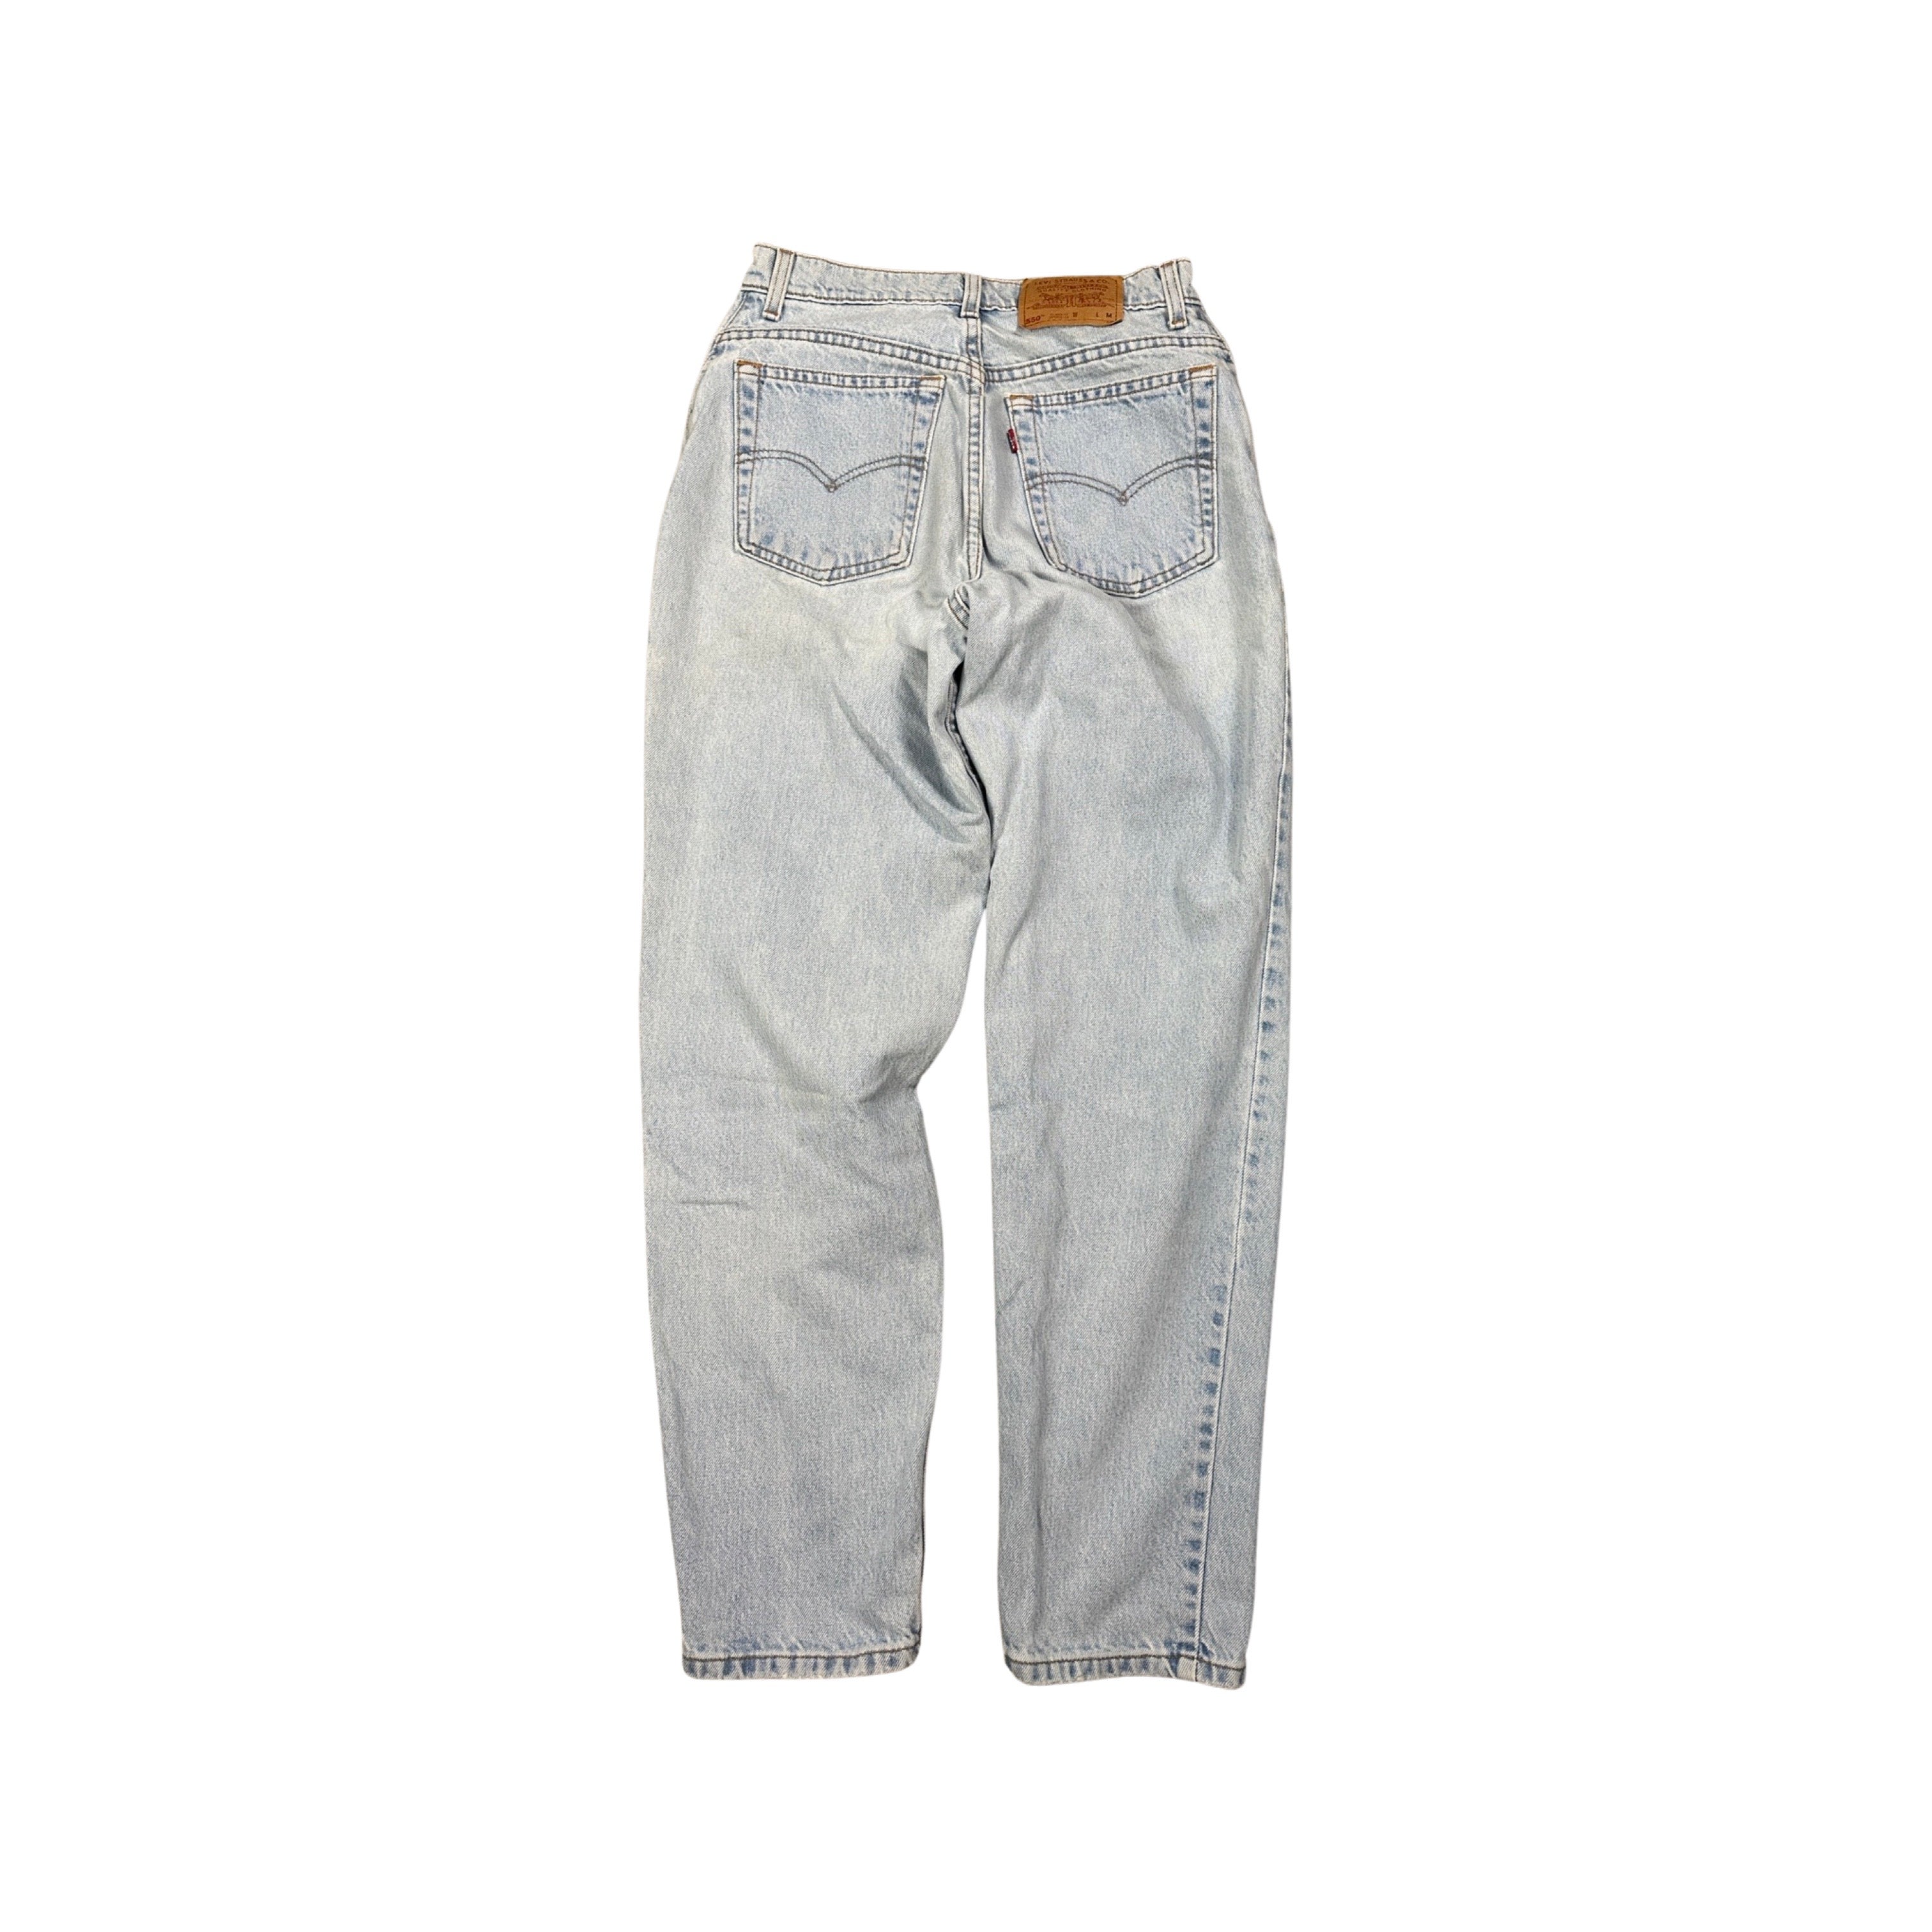 Levi’s 550 Jeans 1997 (28”)